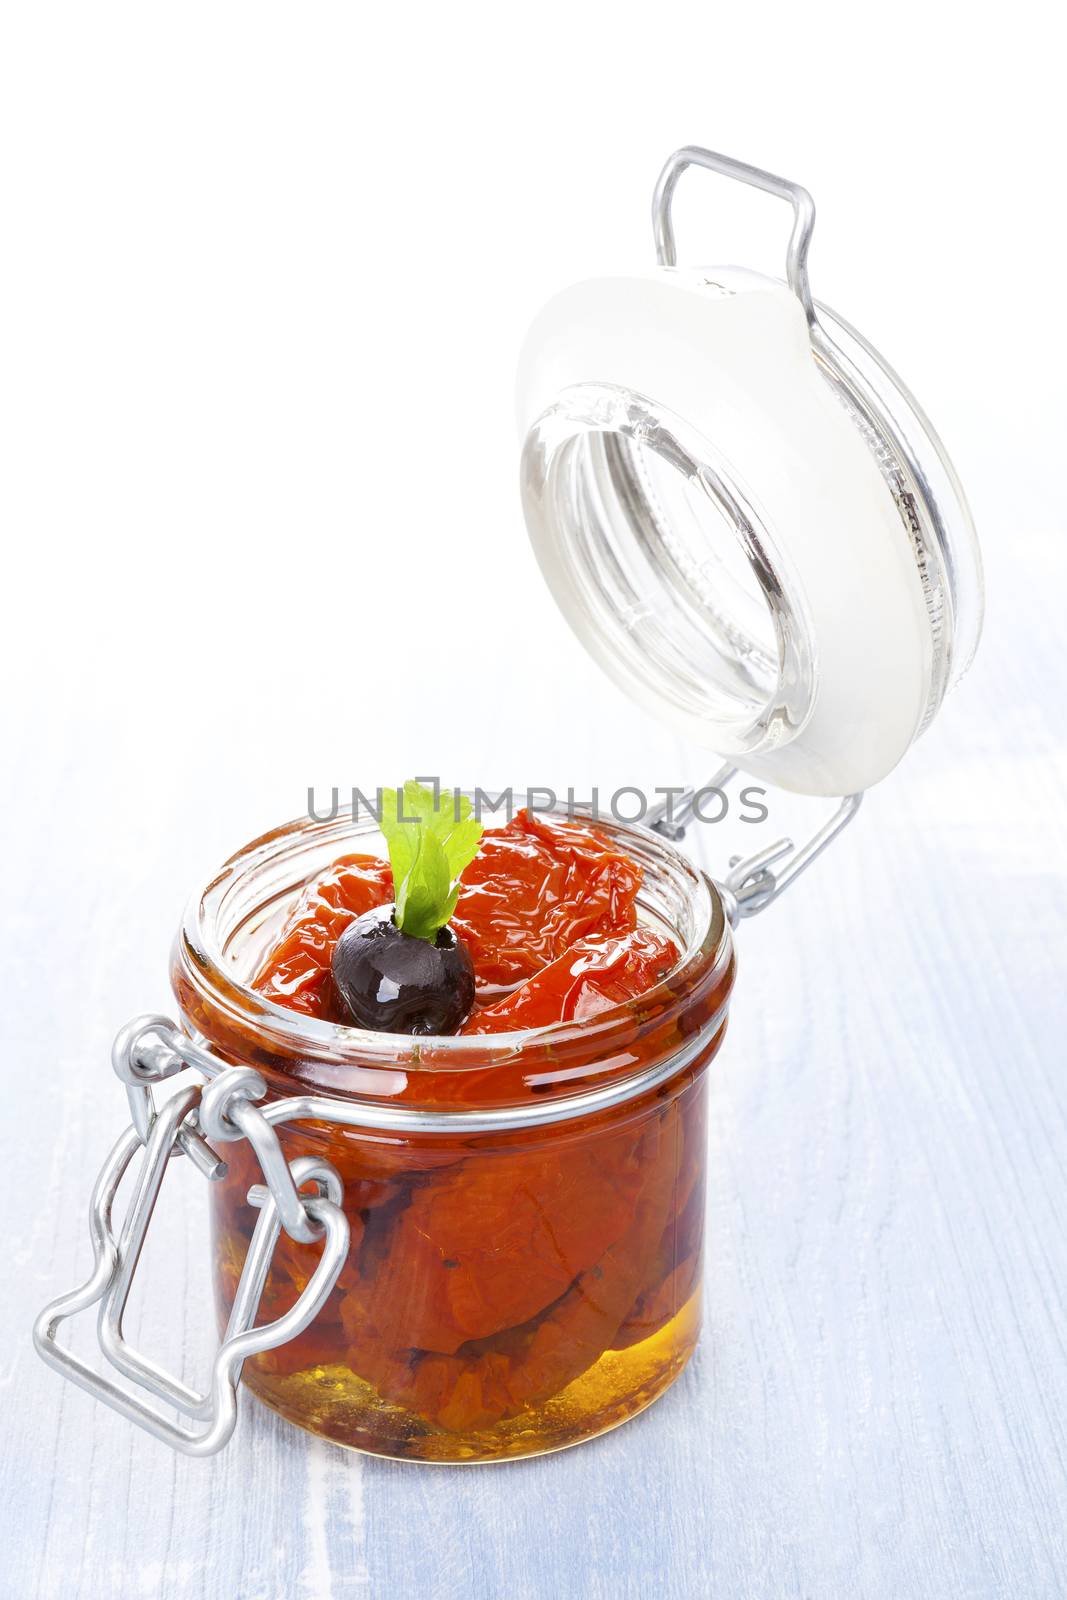 Dry tomatoes in oil in jar. by eskymaks